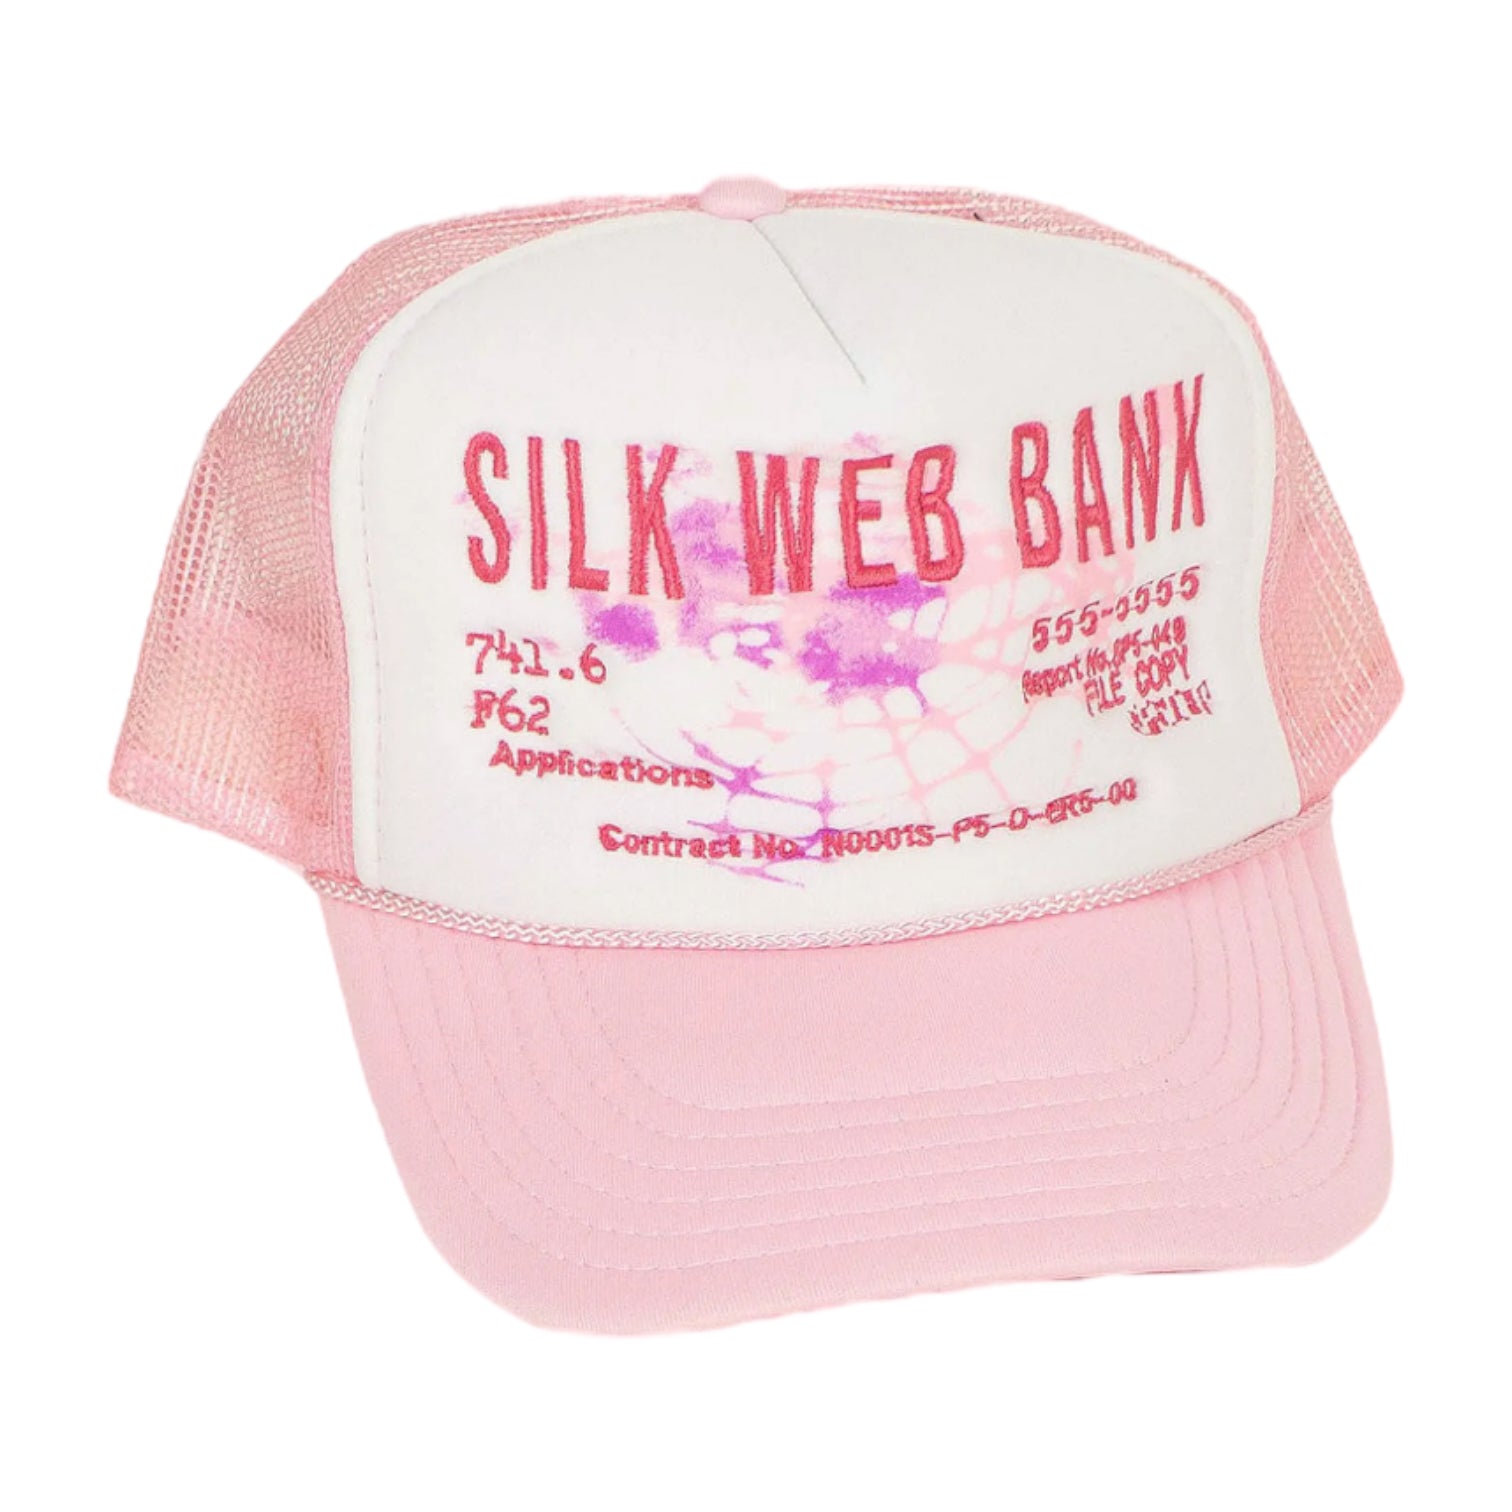 Sp5der Silk Web Bank Trucker Hat Pink